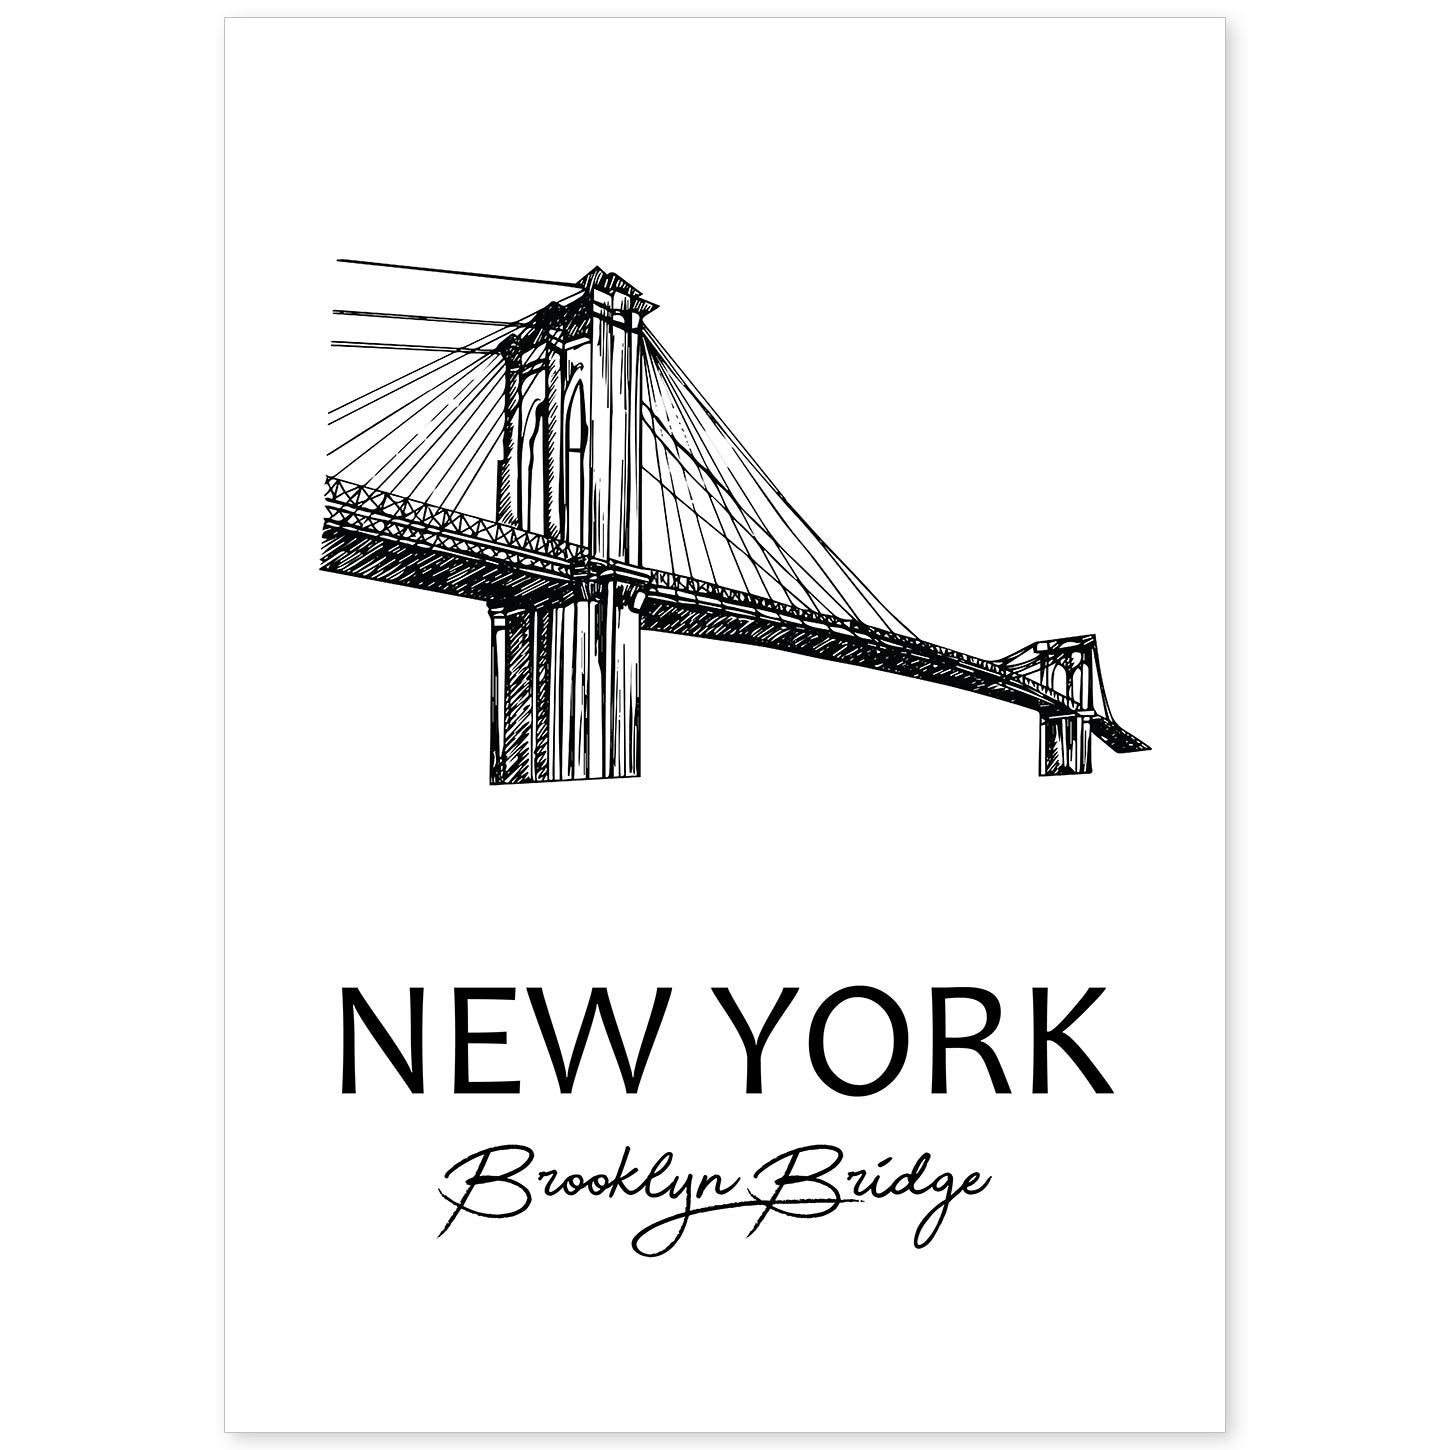 Poster de Nueva York - Puente de Brooklyn. Láminas con monumentos de ciudades.-Artwork-Nacnic-A4-Sin marco-Nacnic Estudio SL